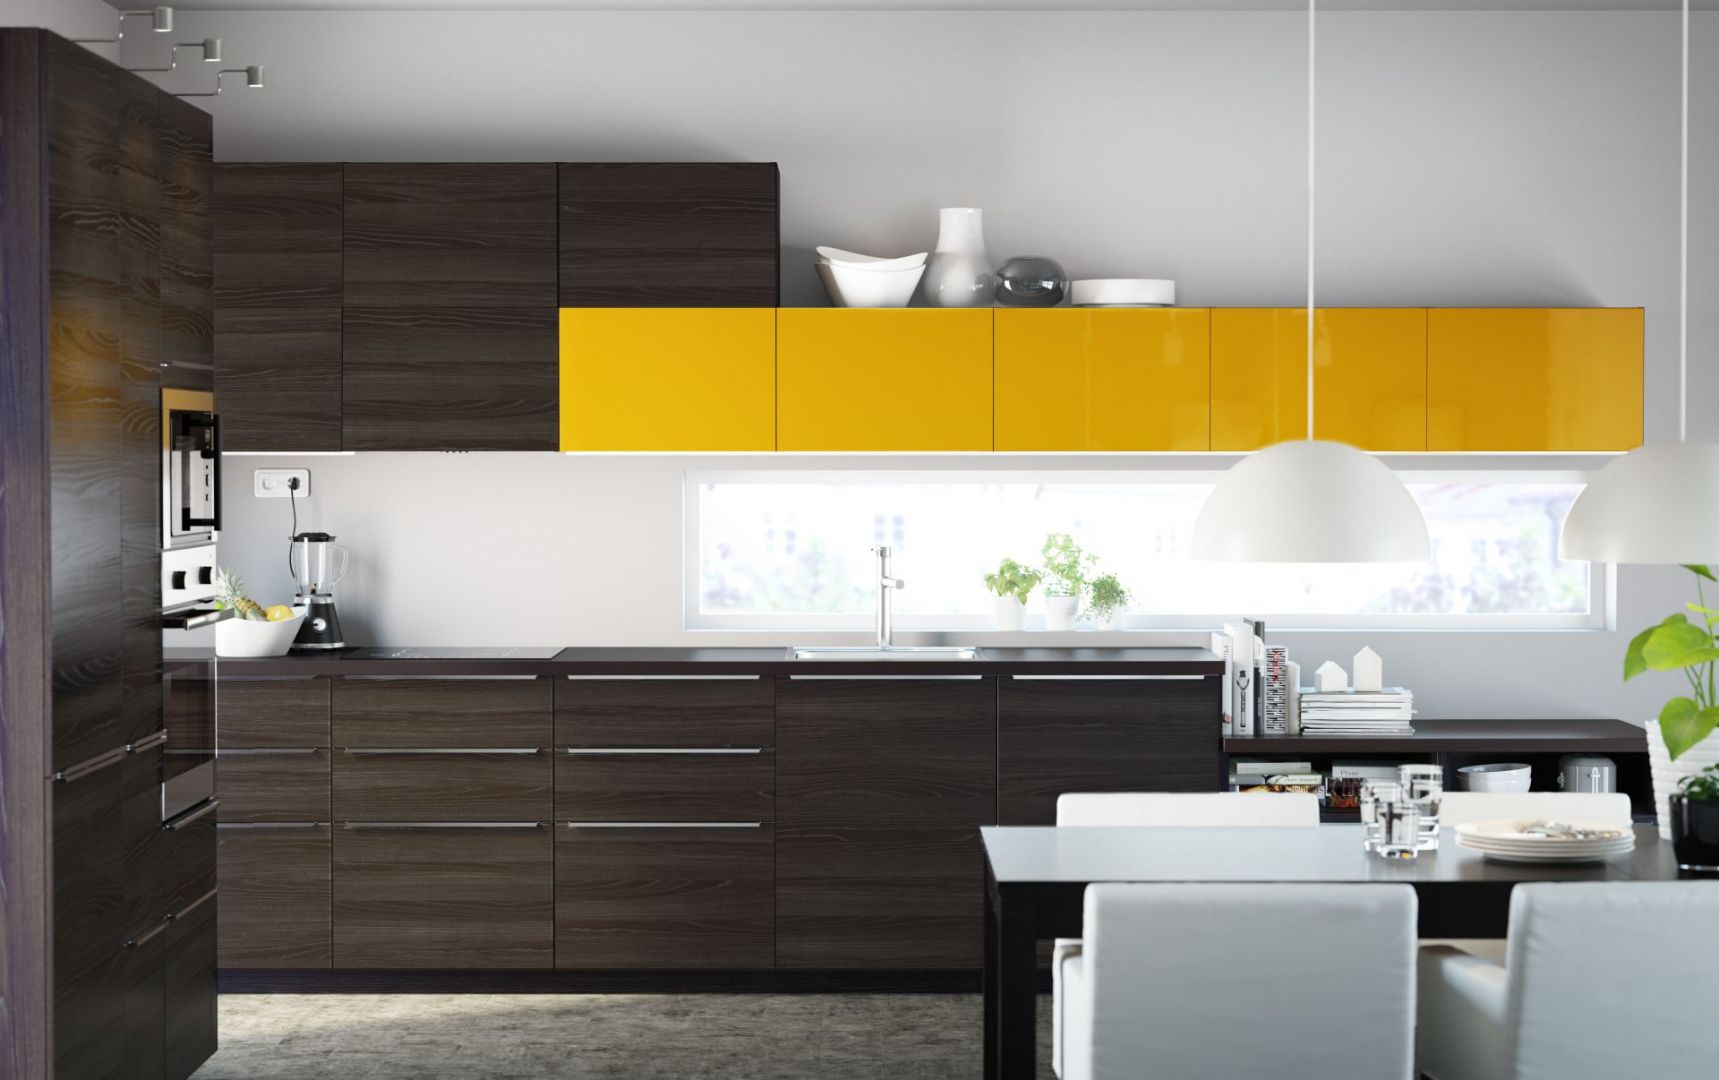 Jeśli obawiasz się modnego koloru na całej powierzchni kuchennych frontów, dodaj barwę w jednym, wyszczególnionym miejscu. Fot. IKEA